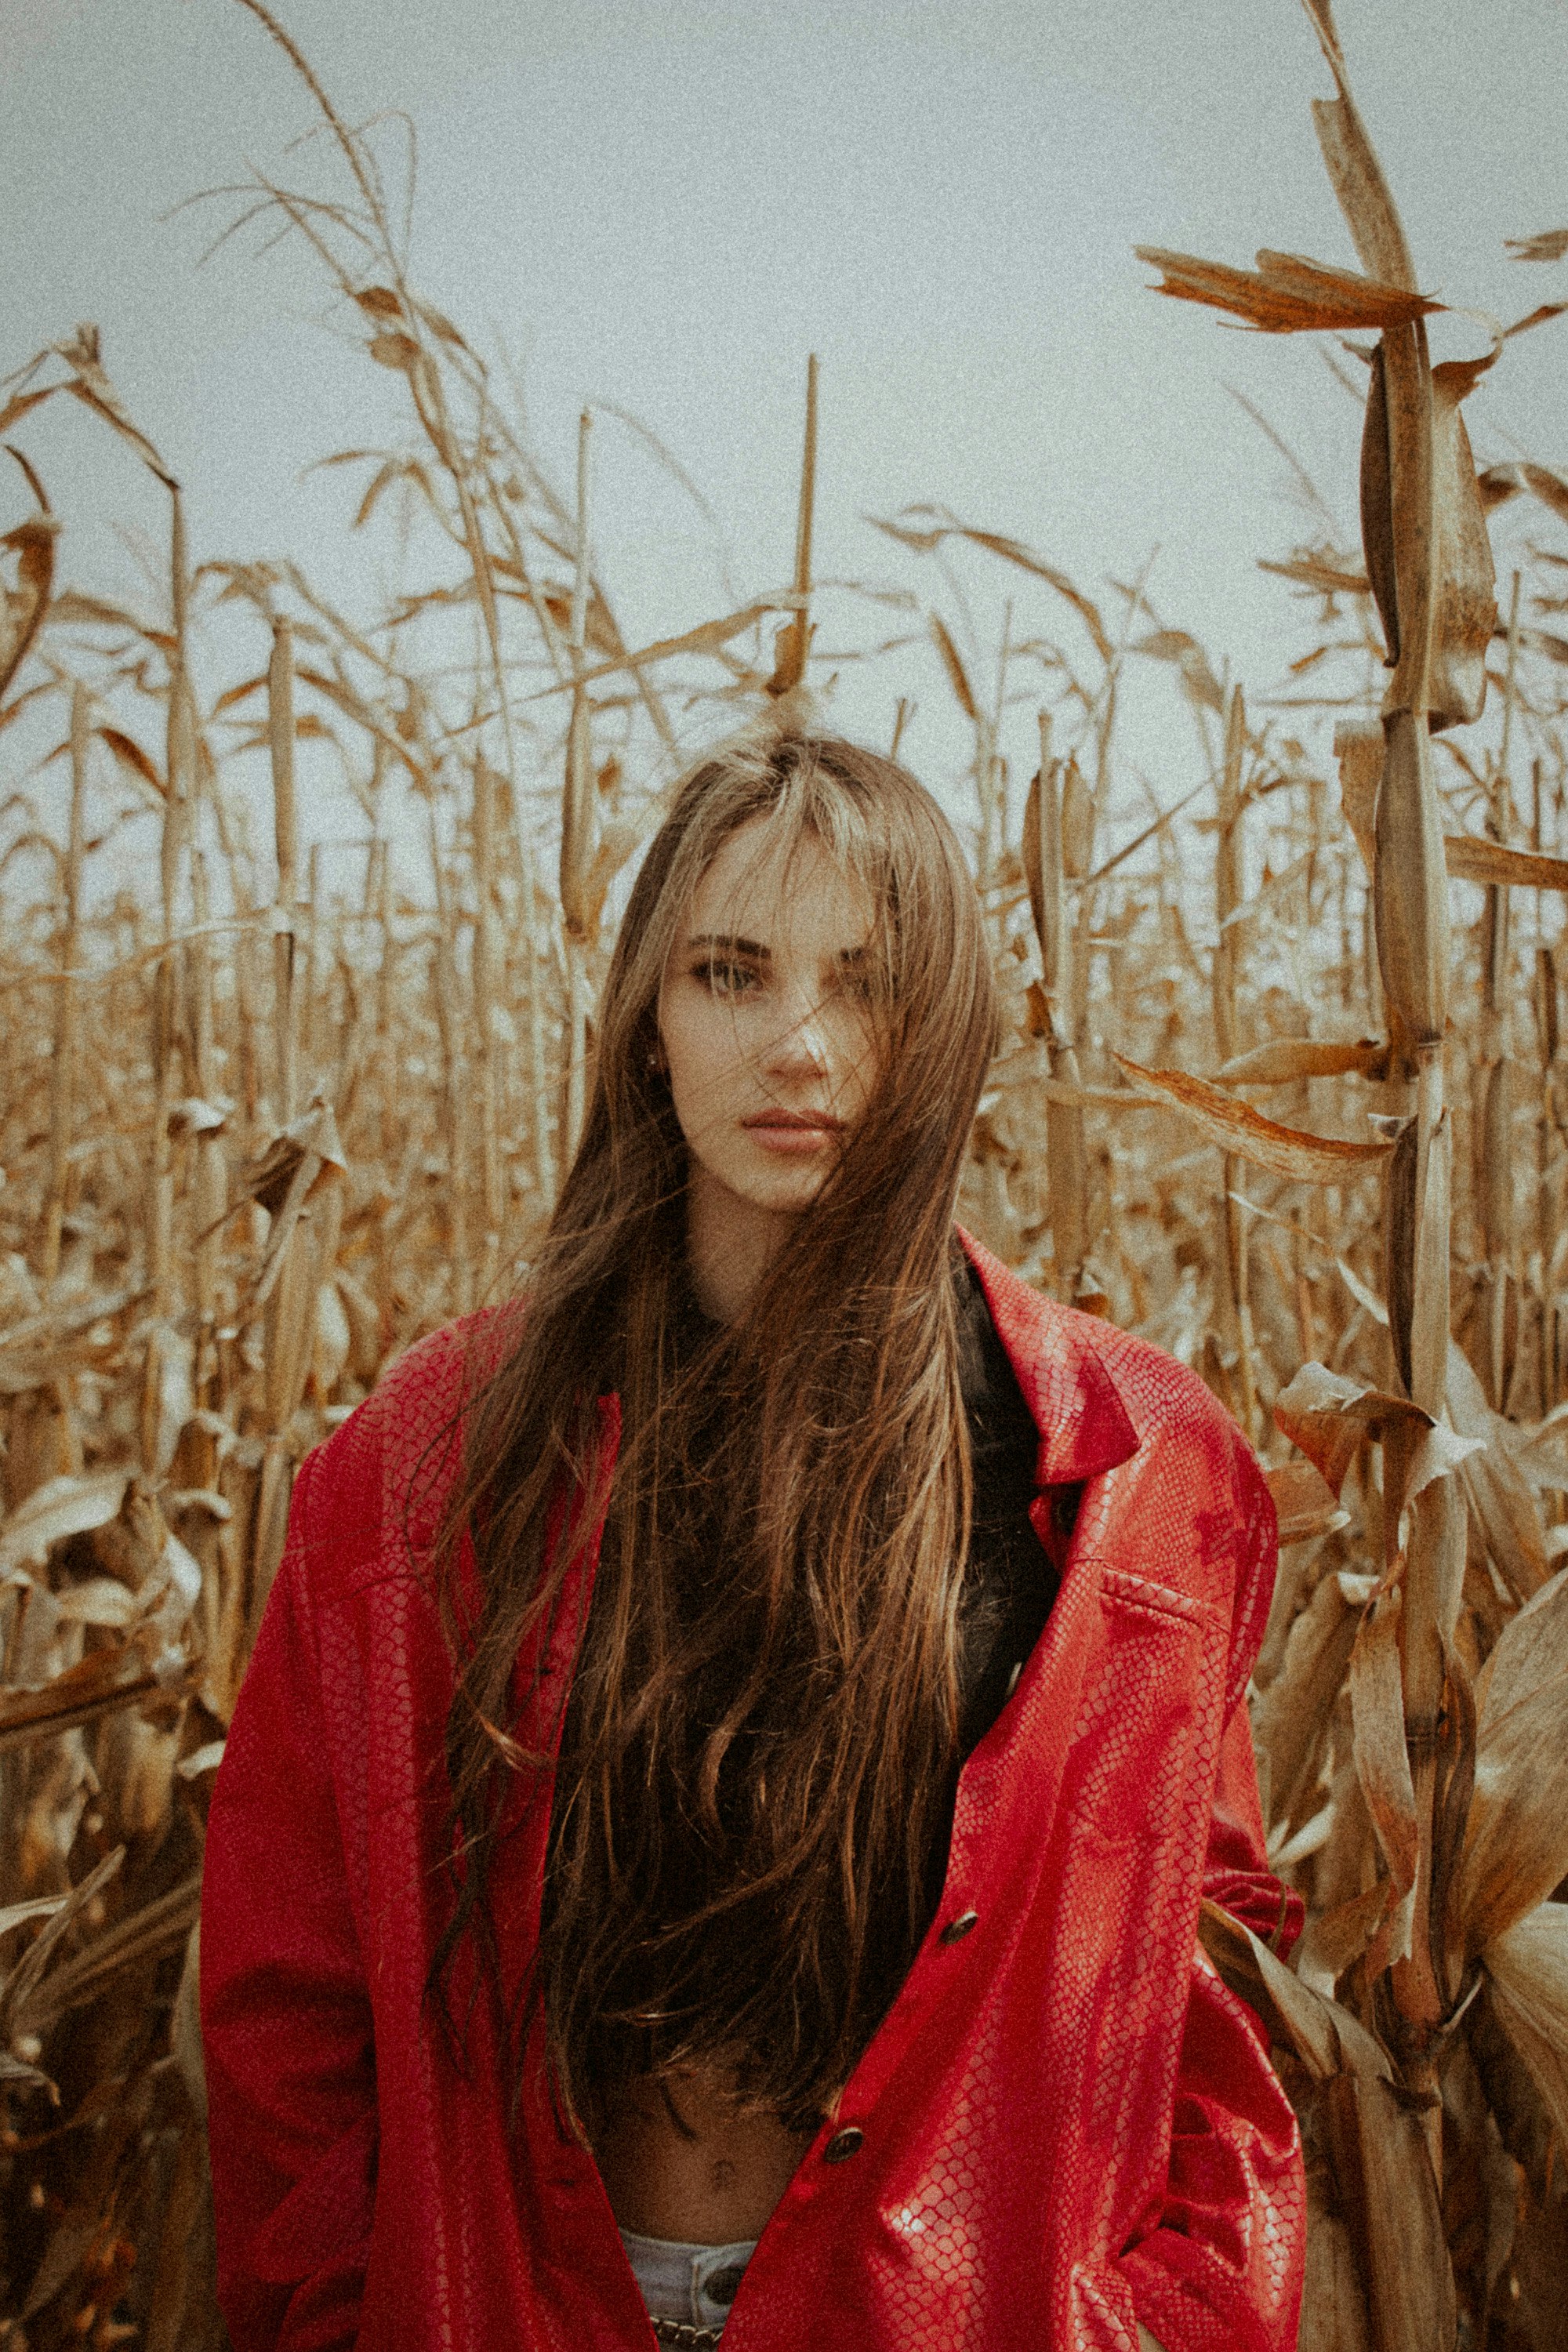 instagram: @liferondeau model: @kaleamorgan_
a modeling posing in a corn field